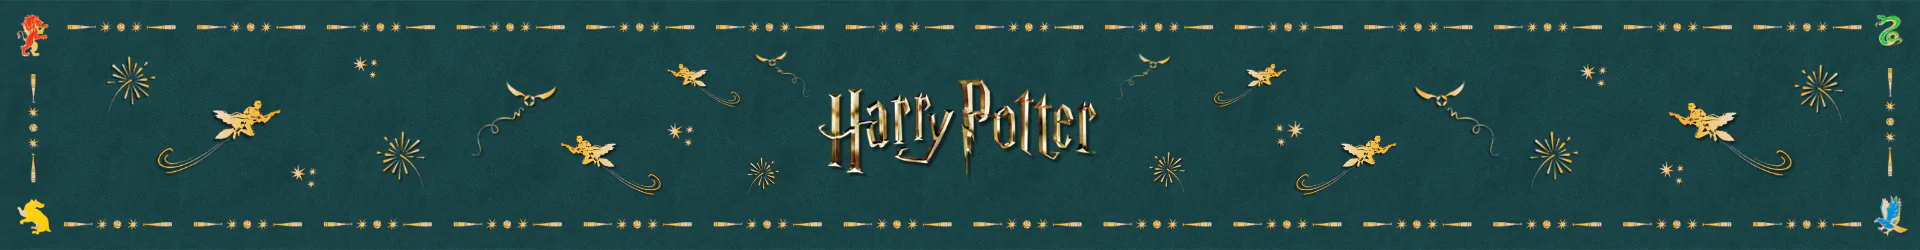 Harry Potter plüsche banner